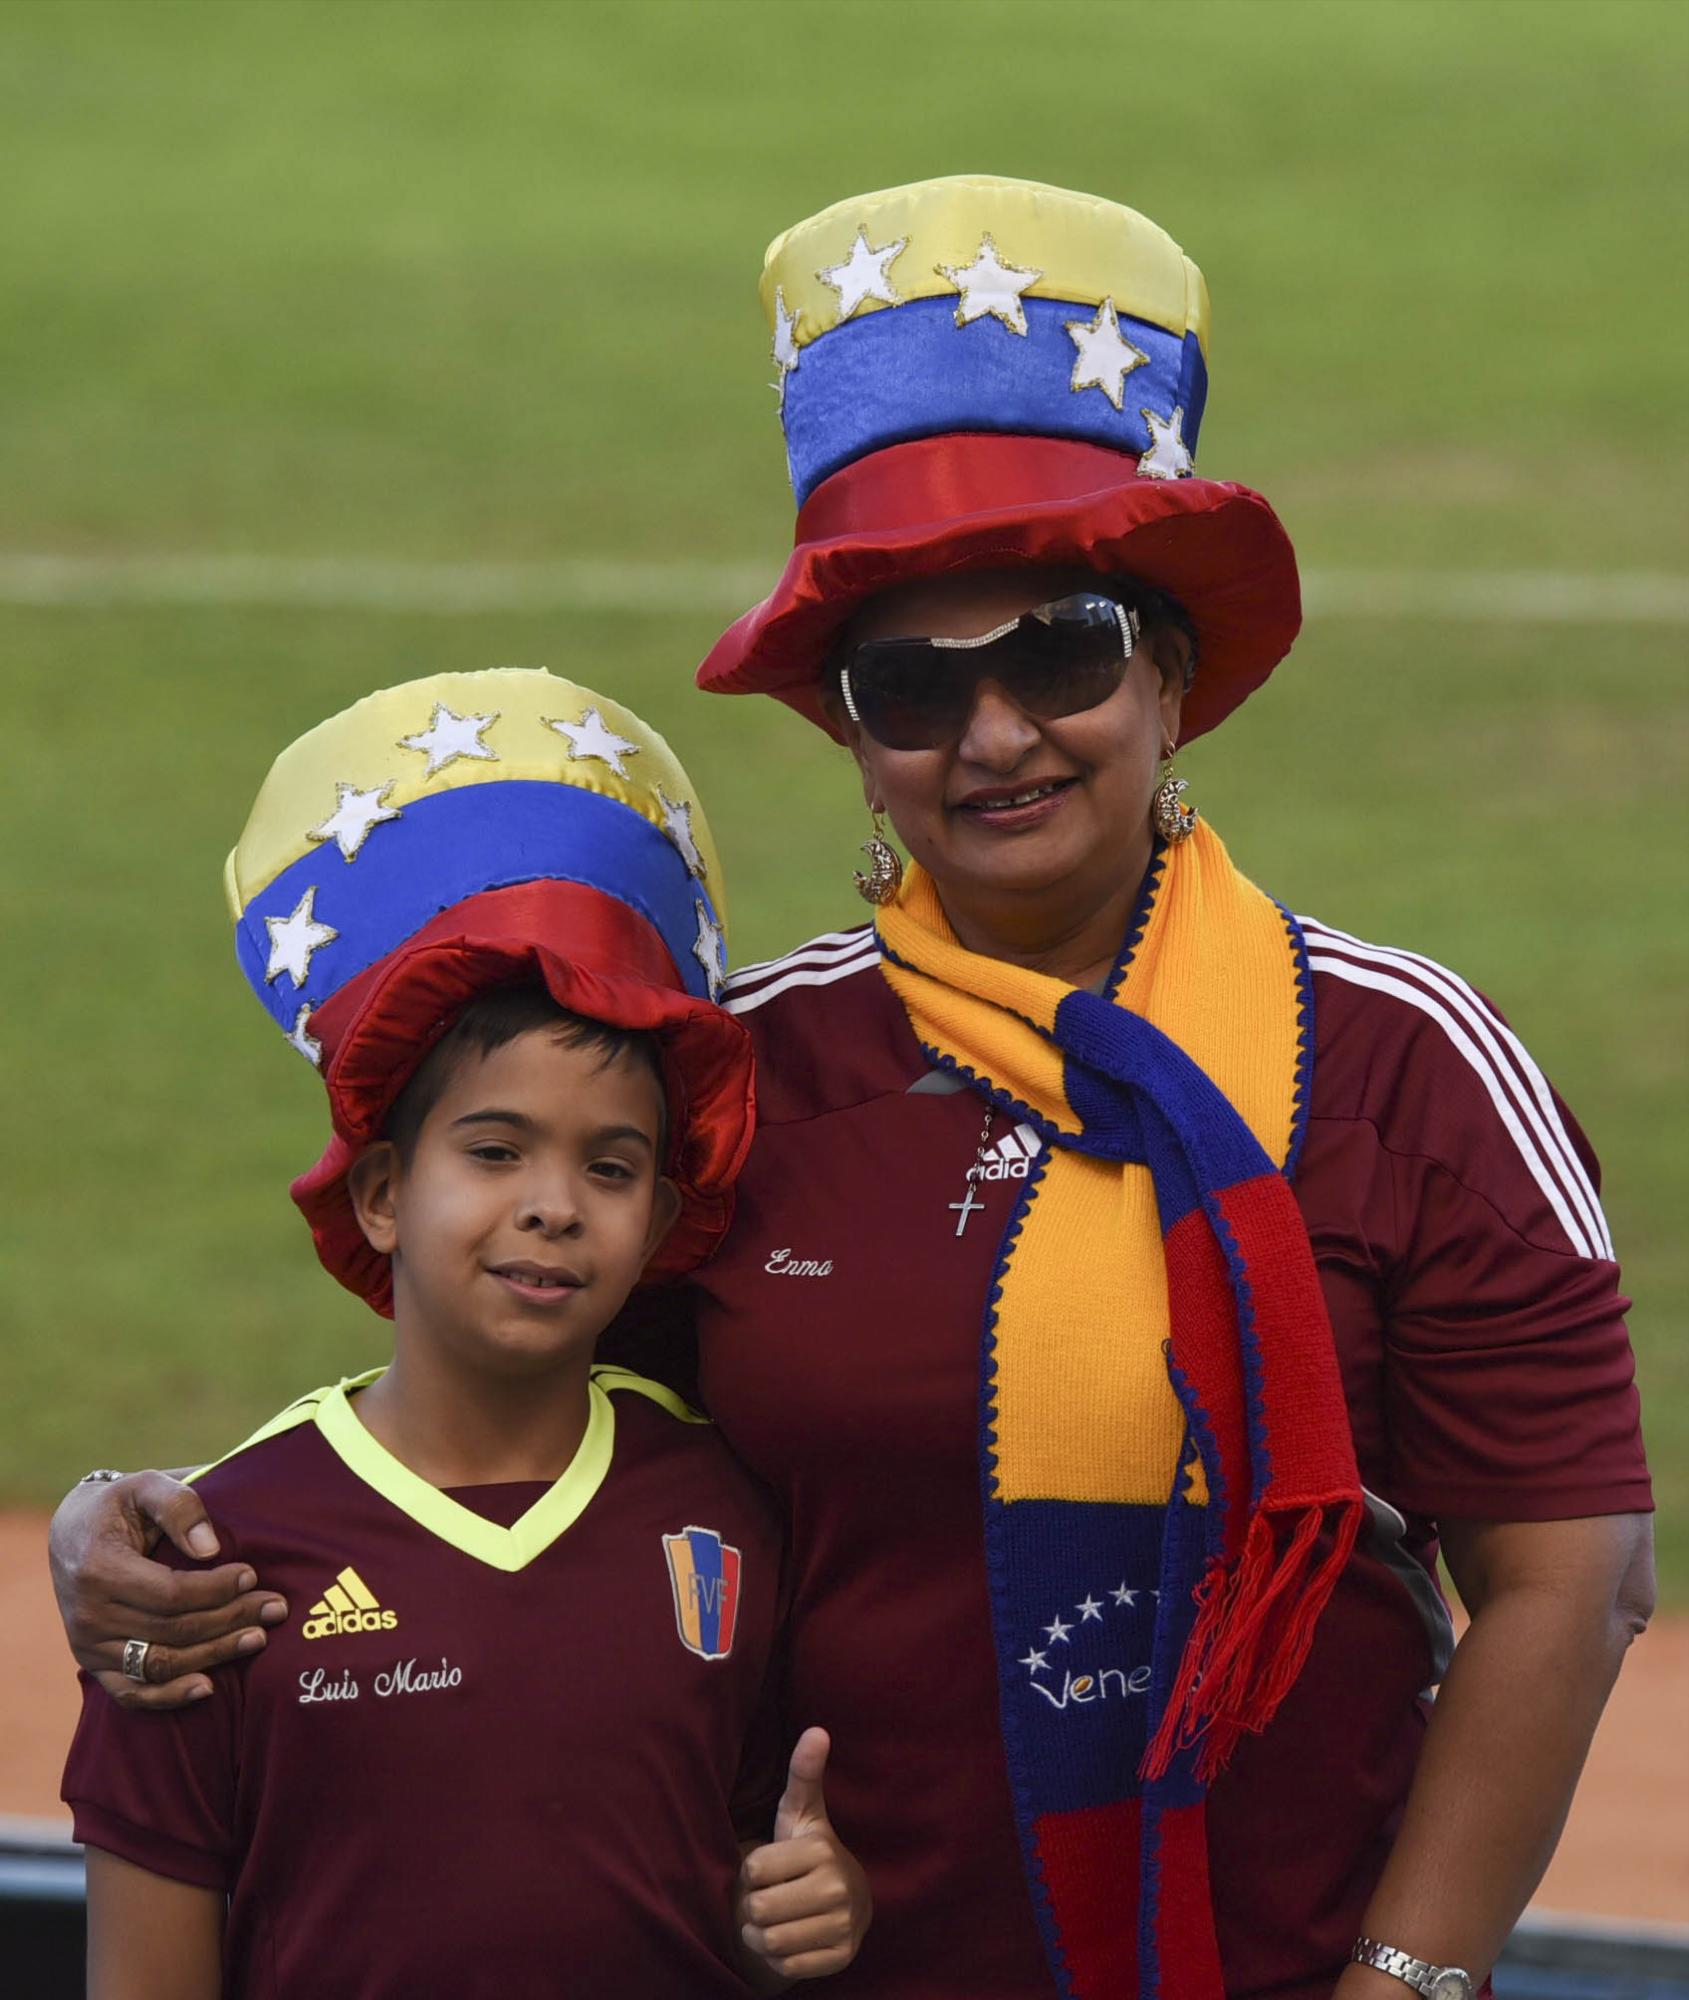 En familia se disfruta mejor. La señora y la niña vinieron desde Zulia, Venezuela a disfrutar de la Serie del Caribe.